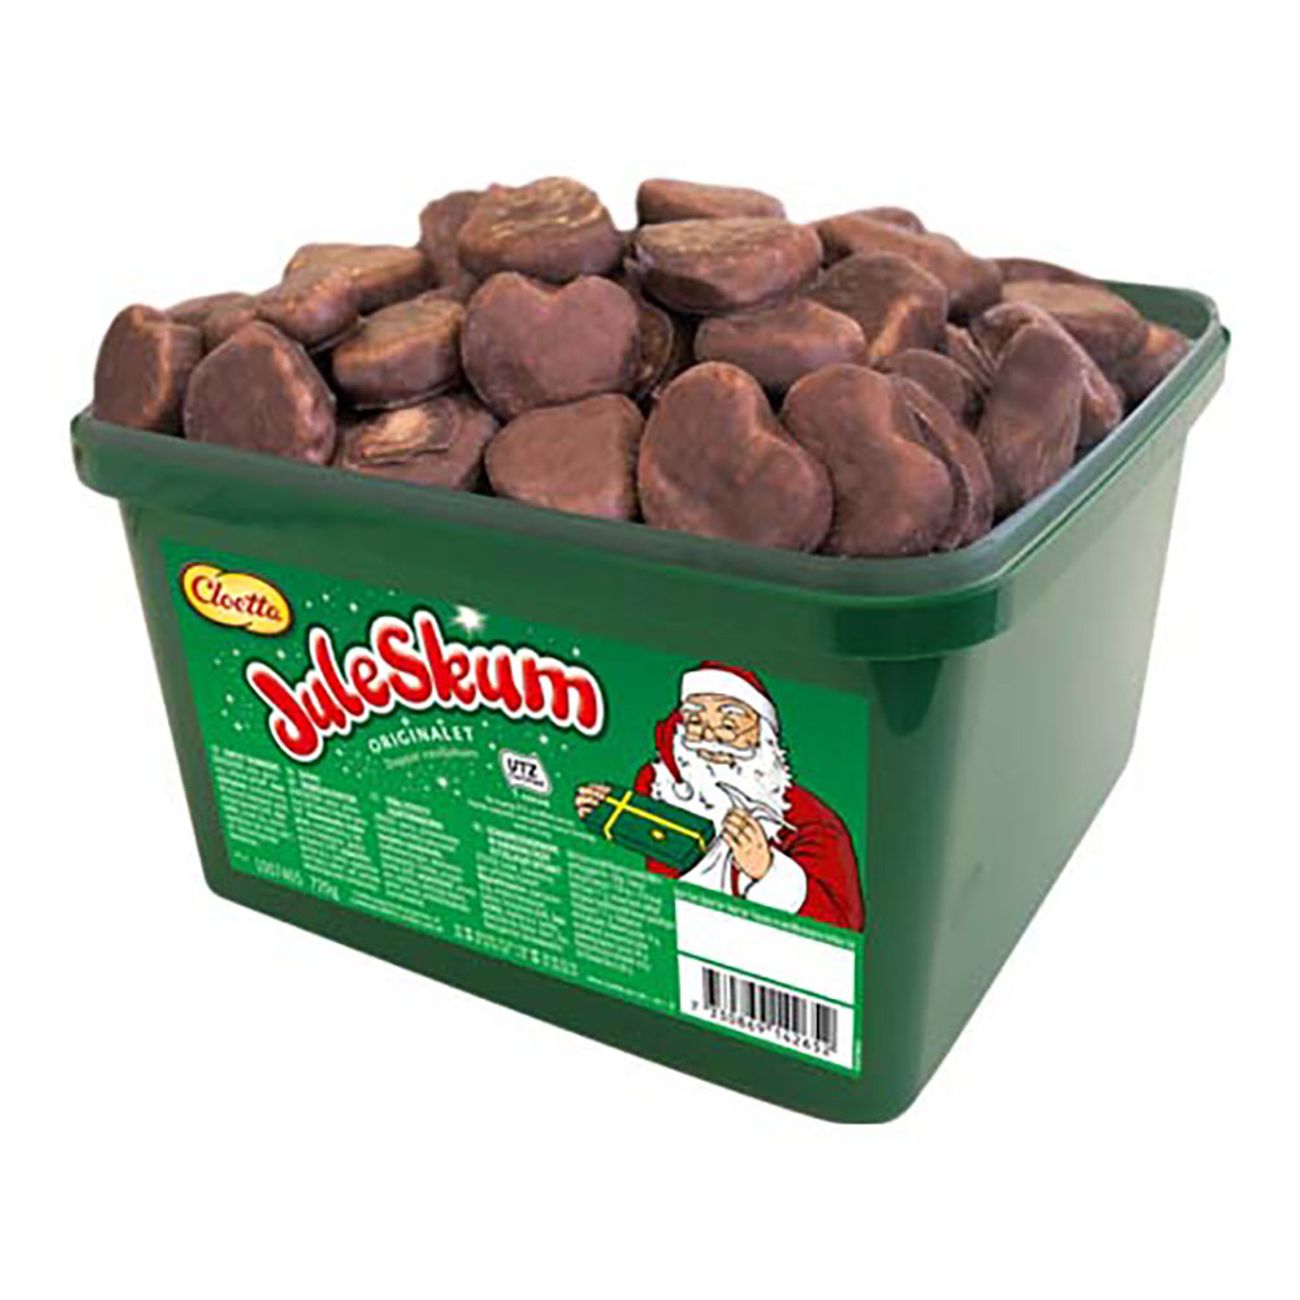 chokladdoppad-juleskum-storpack-79503-1